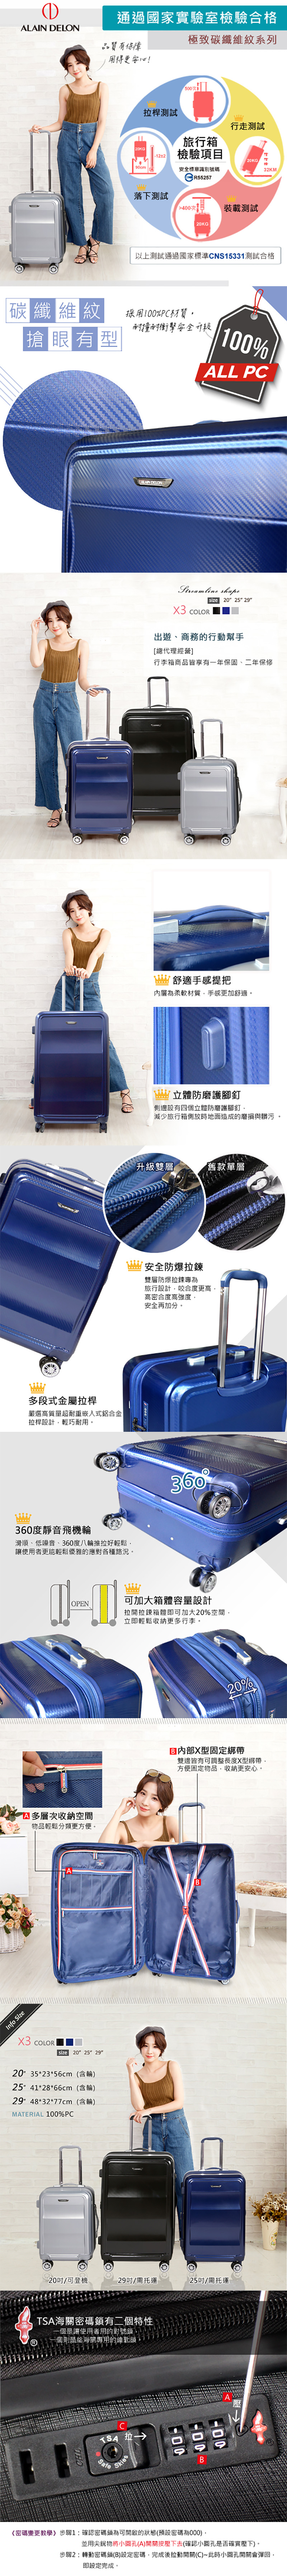 ALAIN DELON 亞蘭德倫 行李箱 登機箱 20吋 極致碳纖維紋系列旅行箱 319-0120 得意時袋